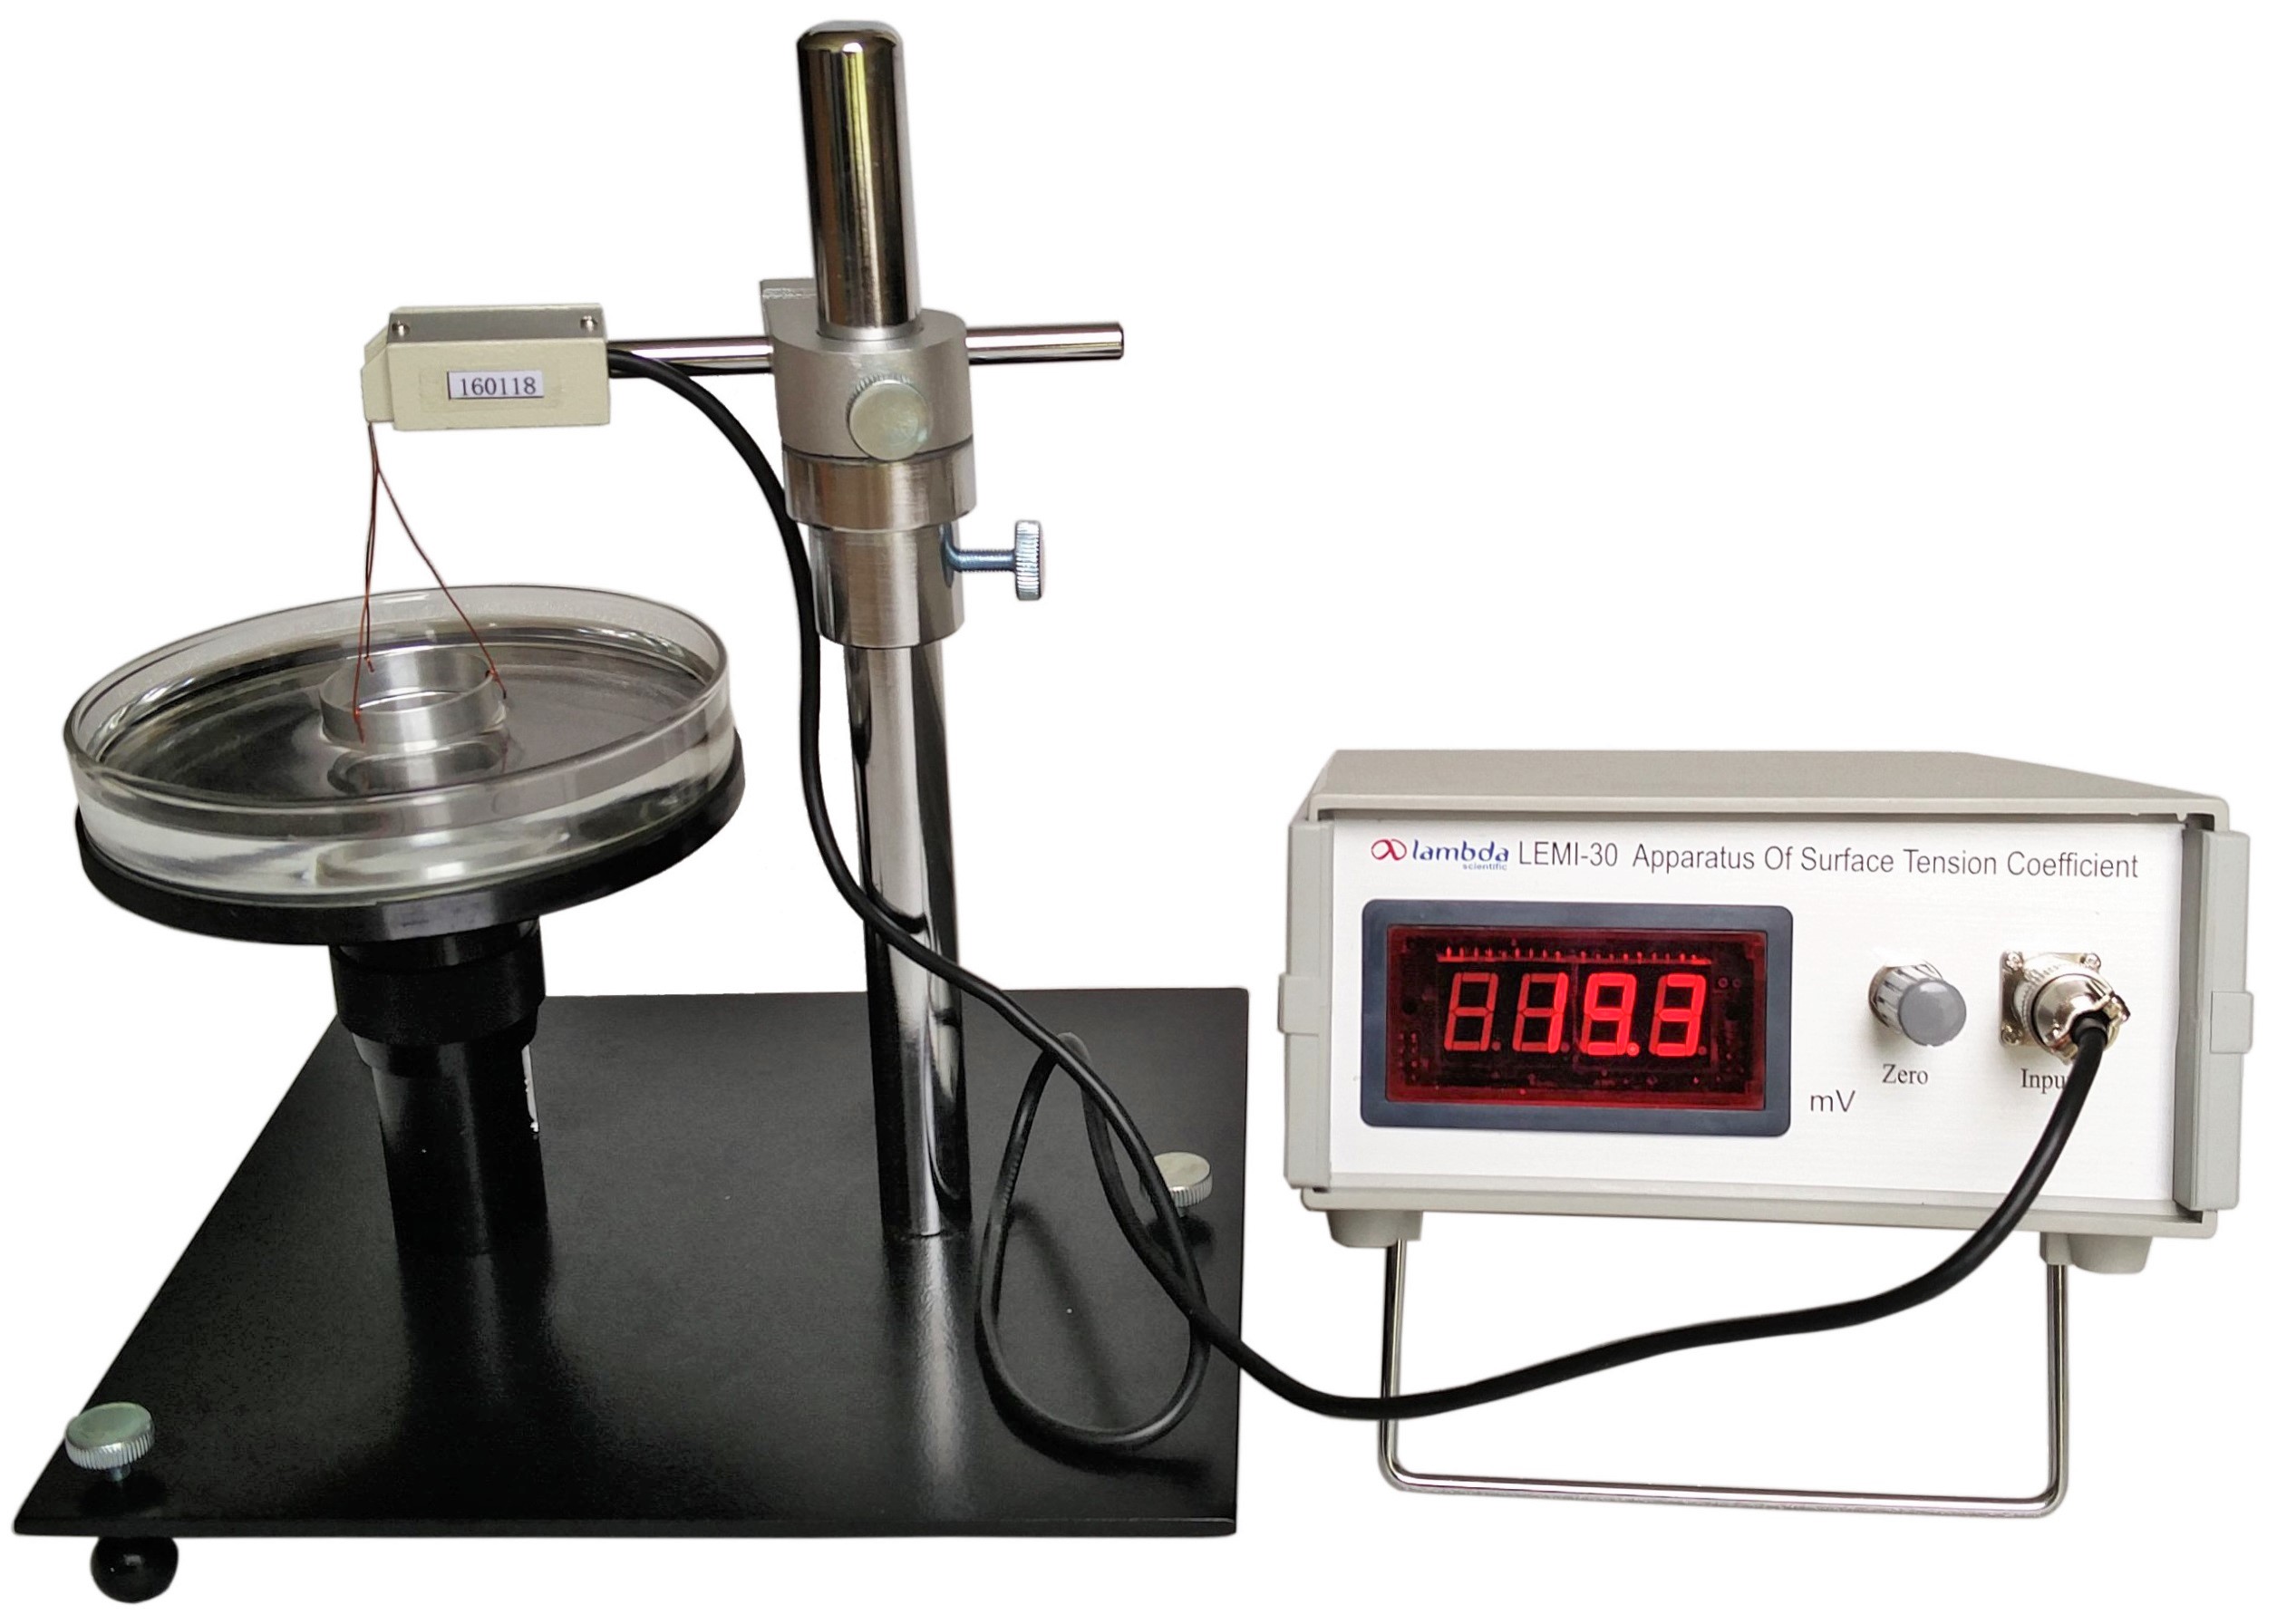 LEMI-30 Apparatus of Measuring Liquid Surface Tension Coefficient